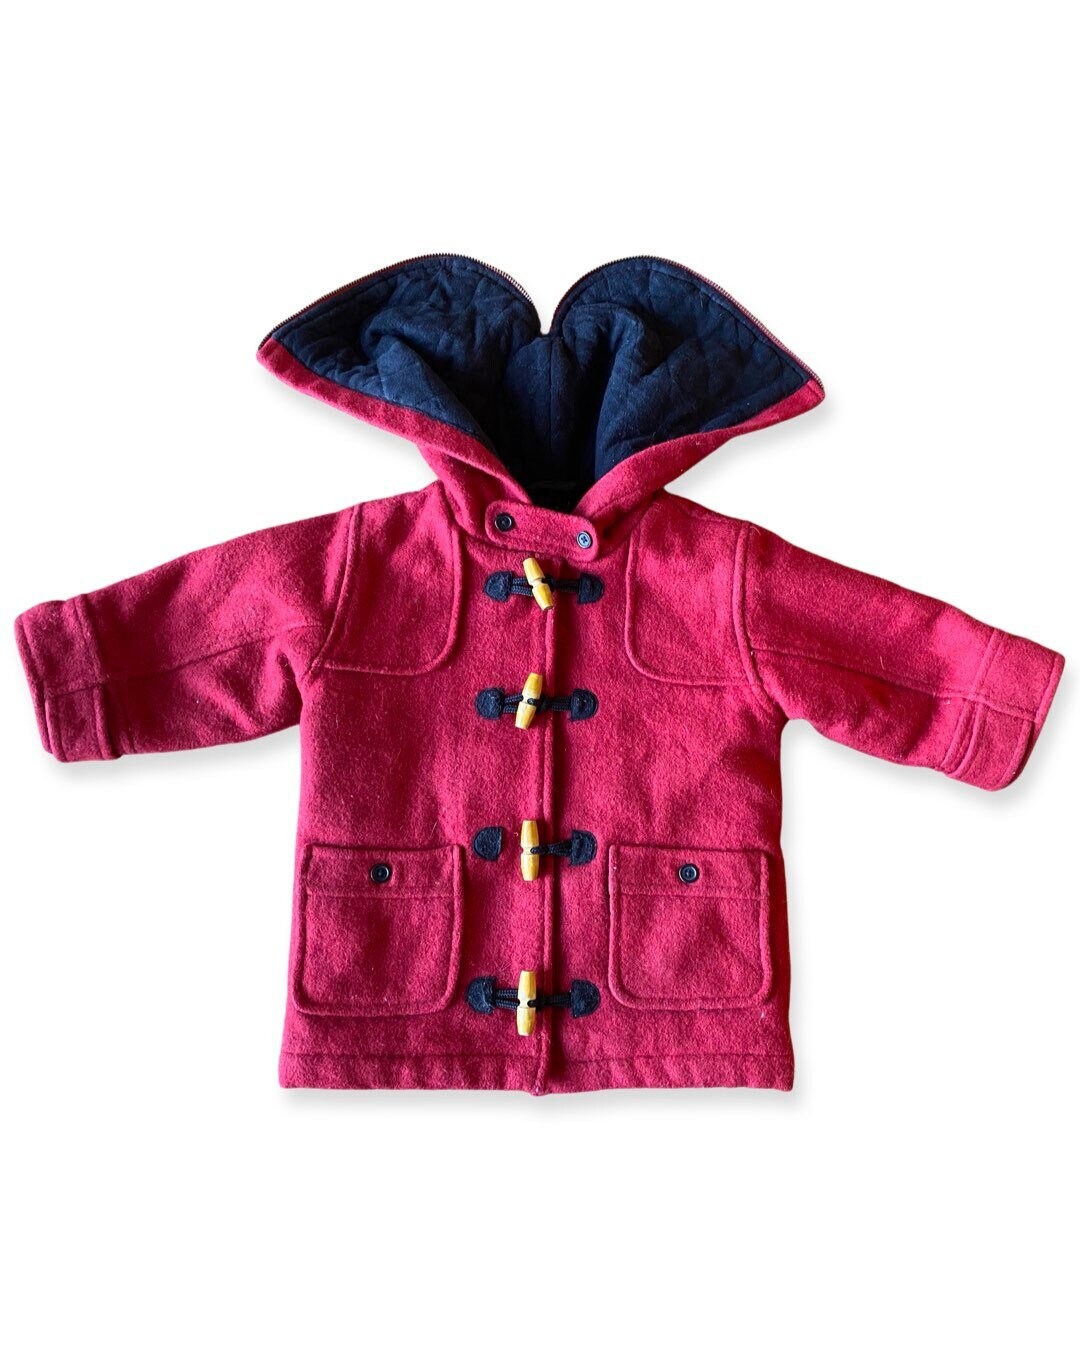 Beyond© Kids Boy Cute Winter Wool Blended Outerwear Duffle Hooded Coat 